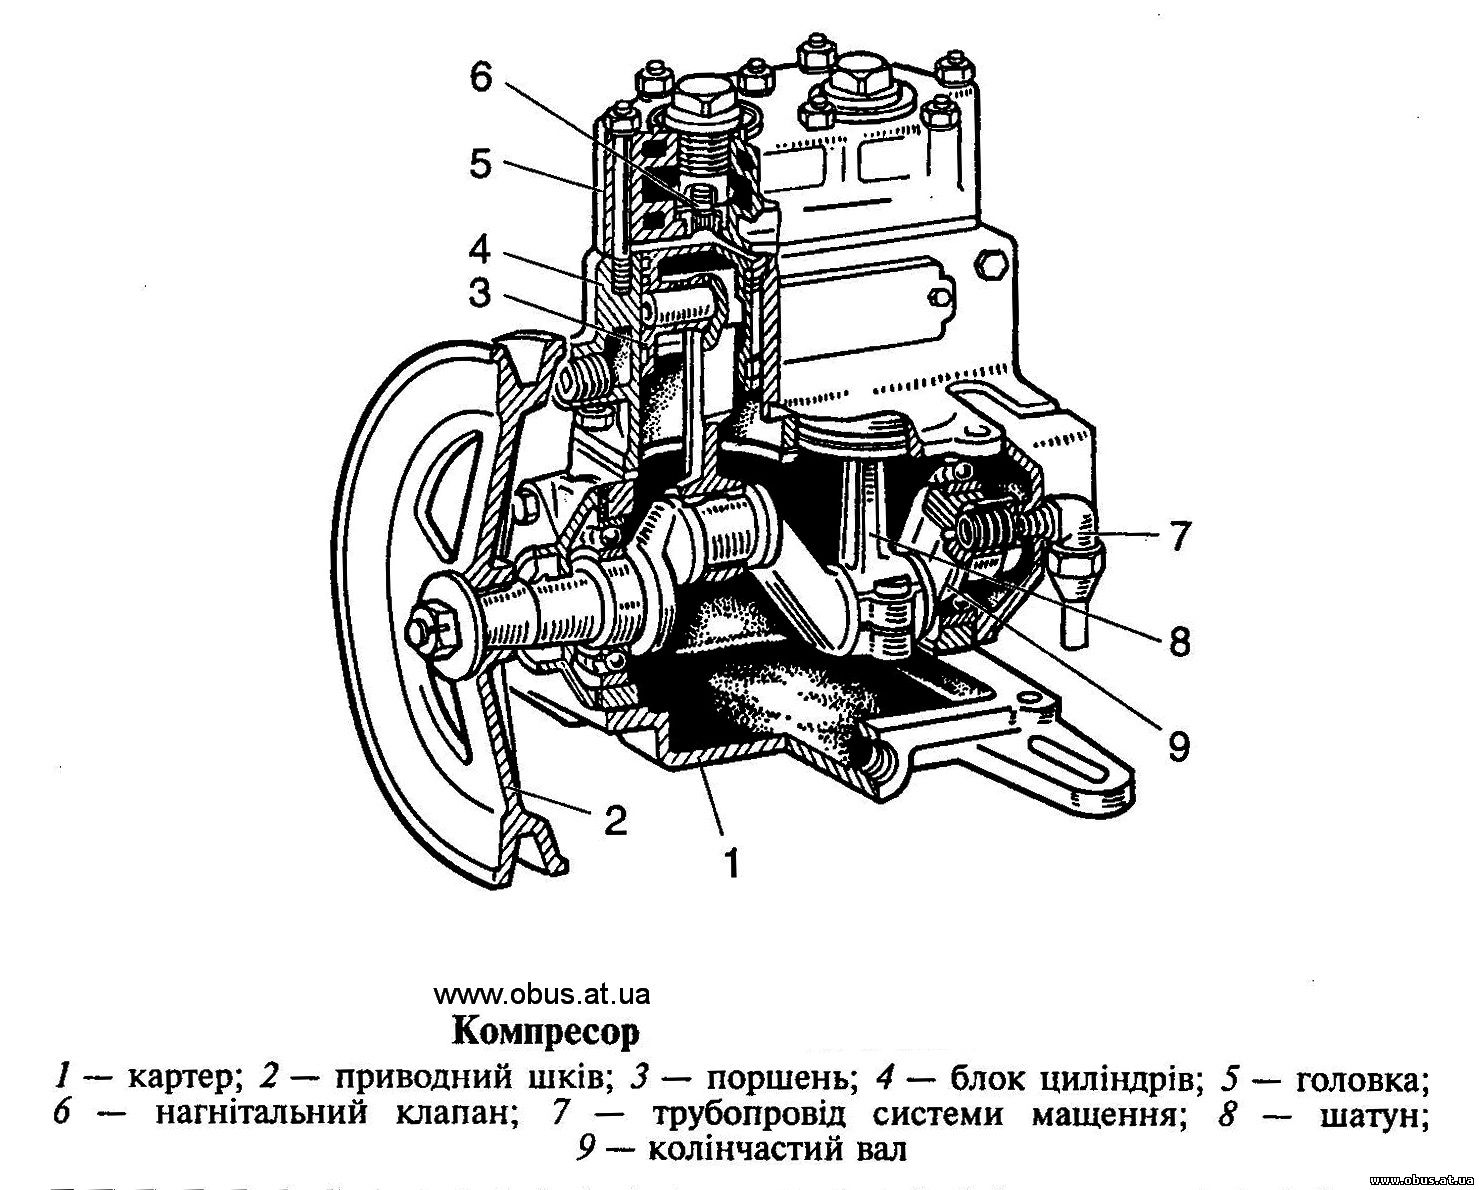 Устройство компрессора автомобиля ЗИЛ 130